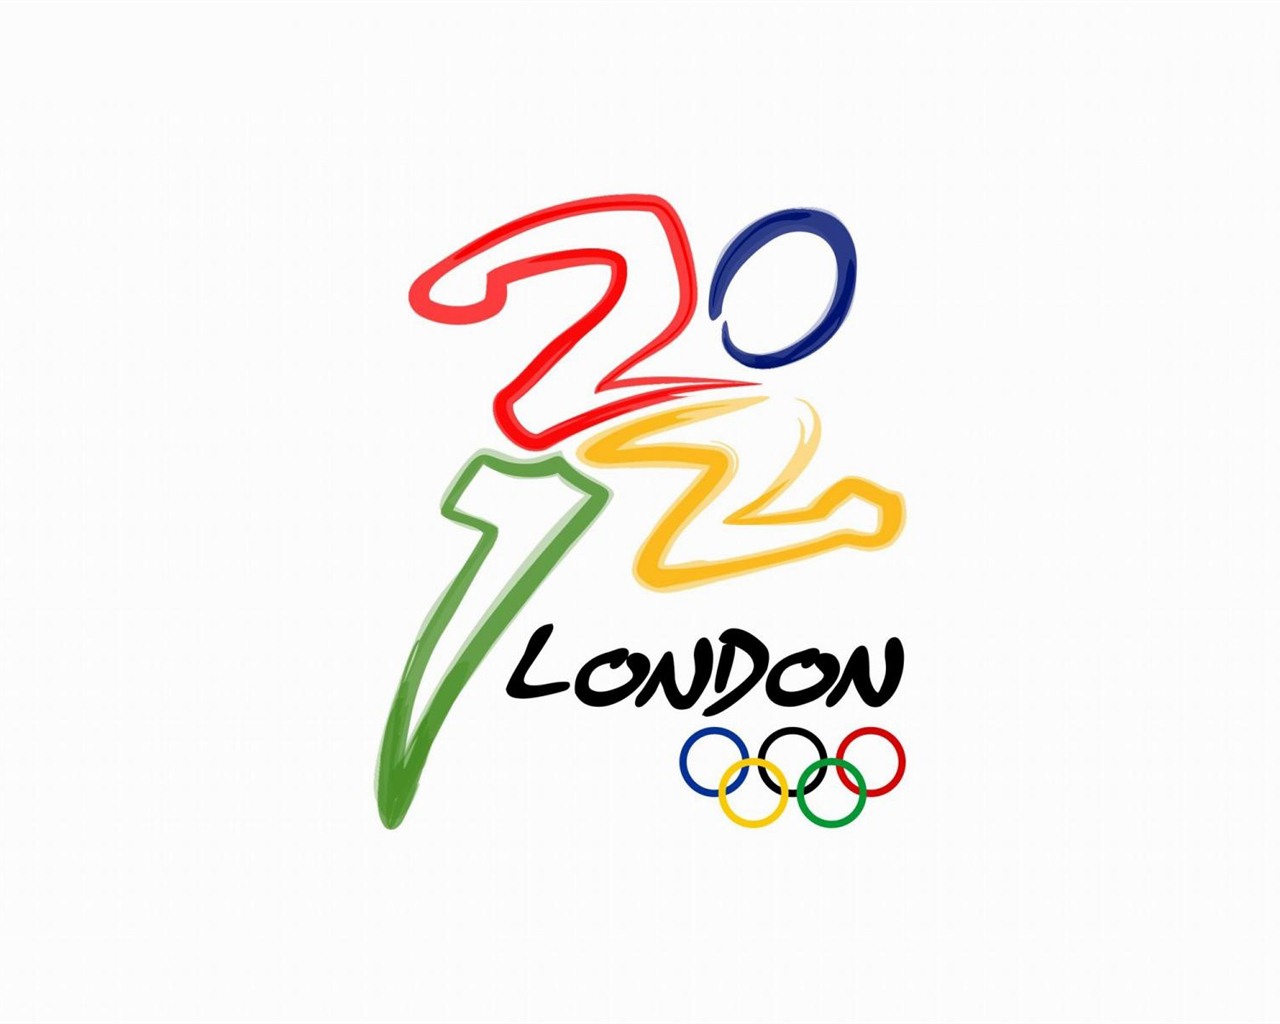 Londres 2012 Olimpiadas fondos temáticos (2) #22 - 1280x1024